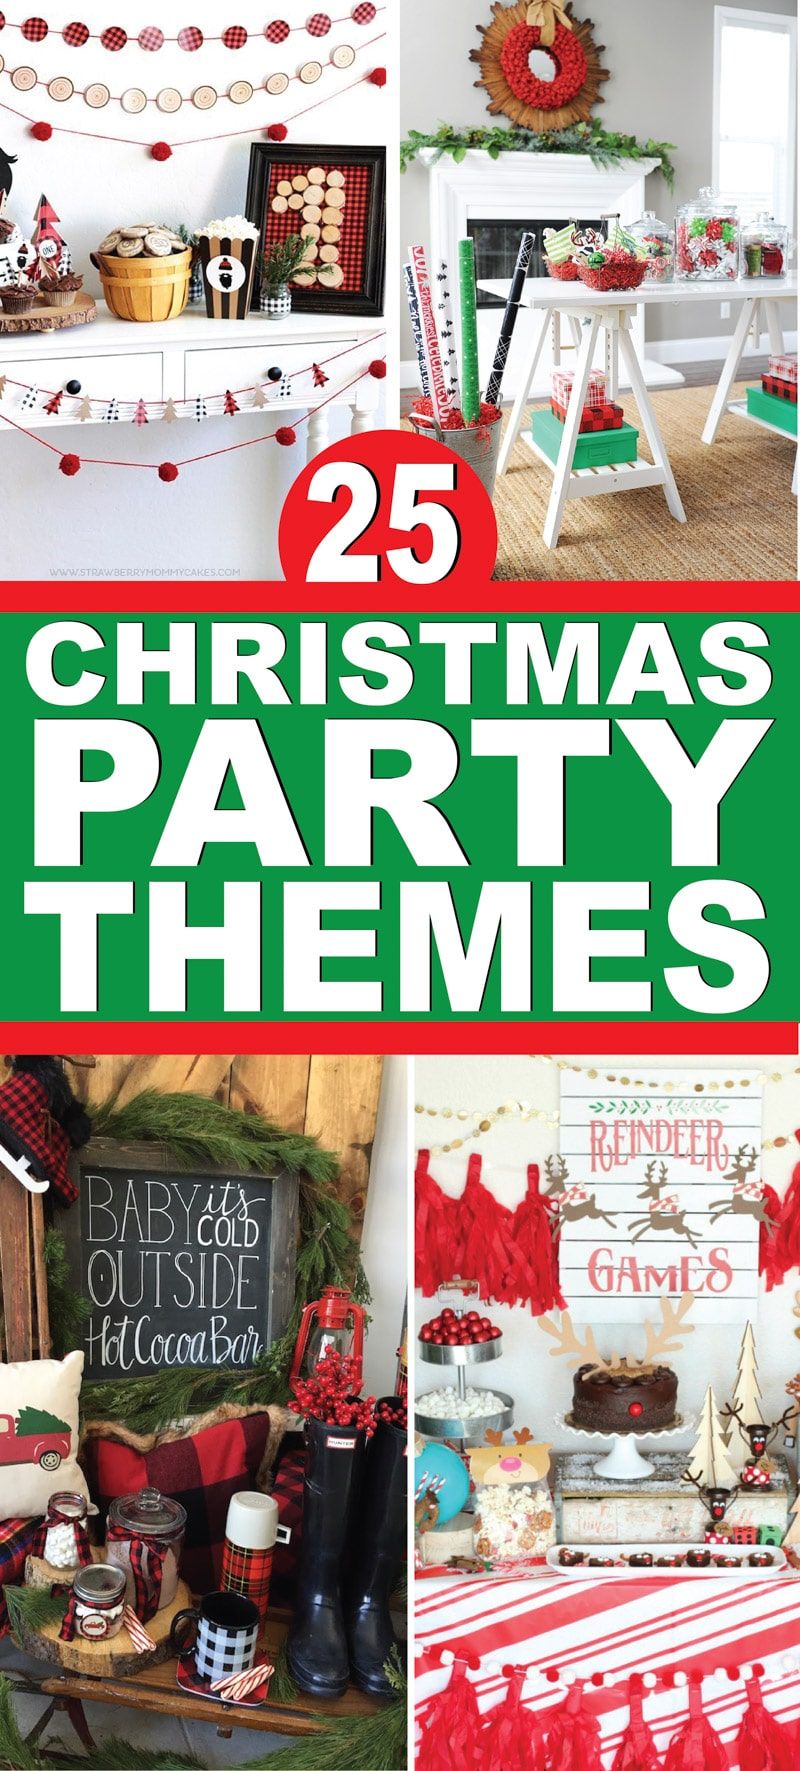 25 από τα καλύτερα θέματα πάρτι Χριστουγέννων! Υπέροχες ιδέες για ενήλικες, για παιδιά και θέματα πάρτι για όλη την οικογένεια!